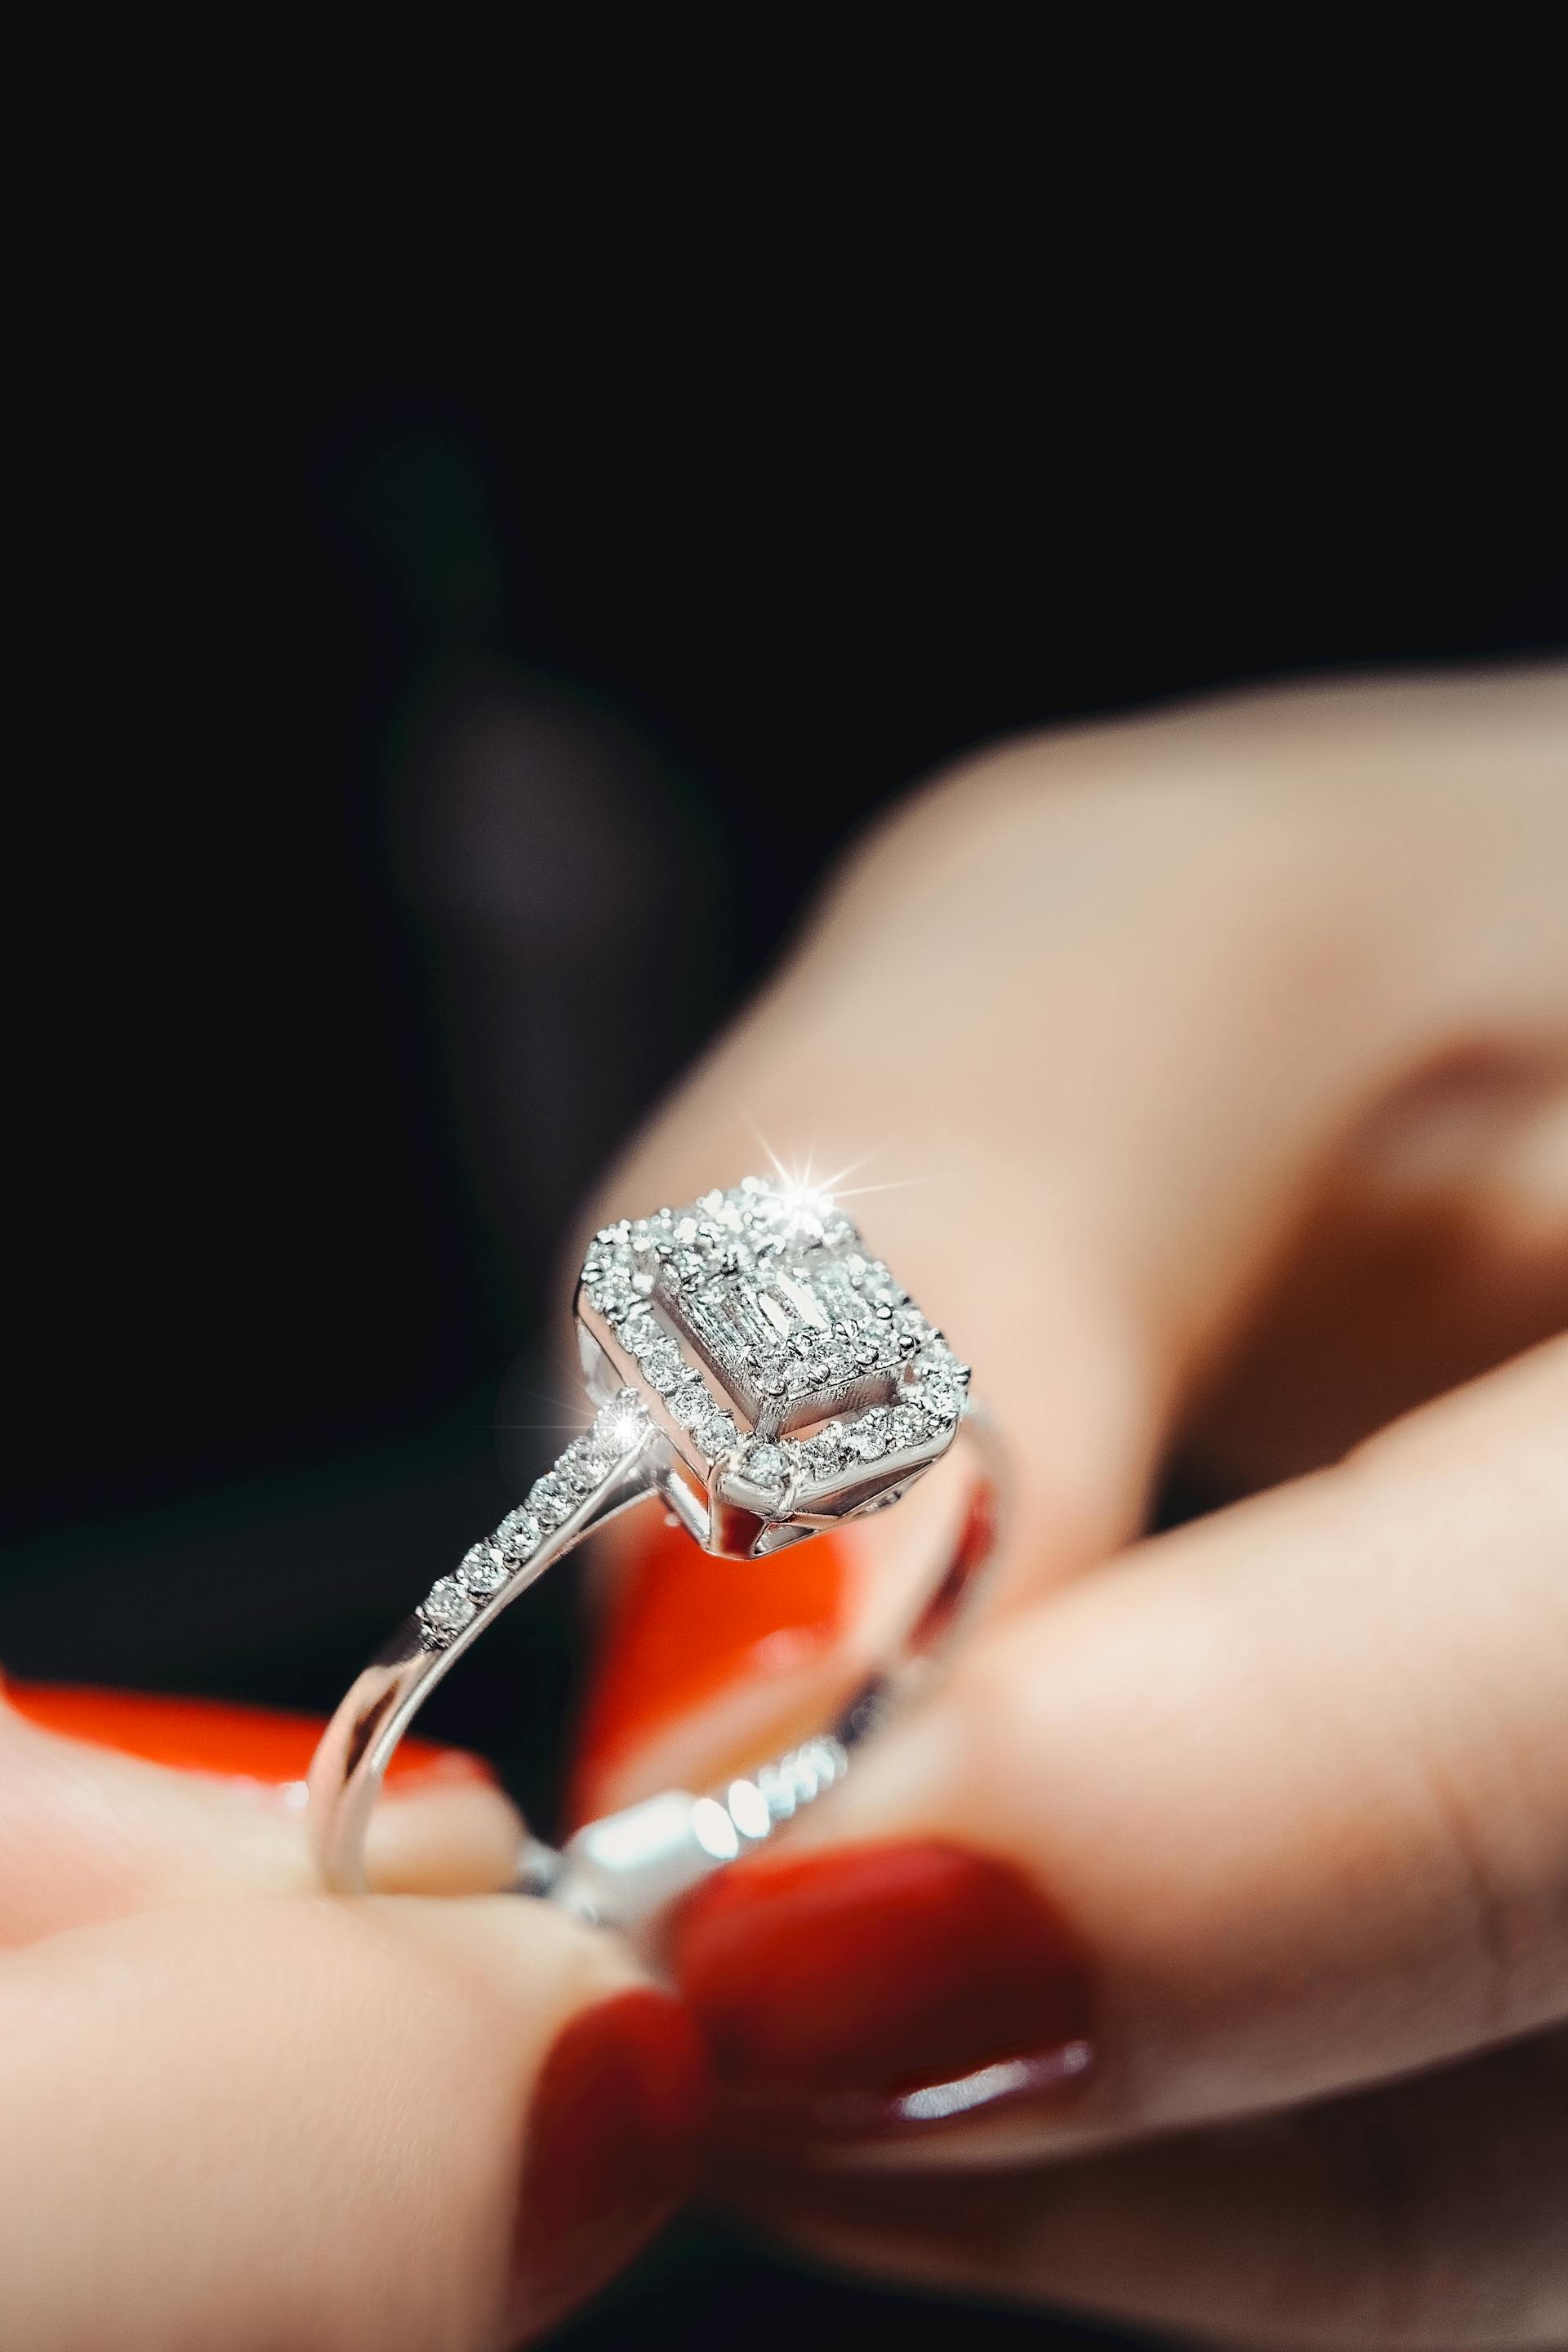 Une femme tenant une bague en diamant | Source : Pexels